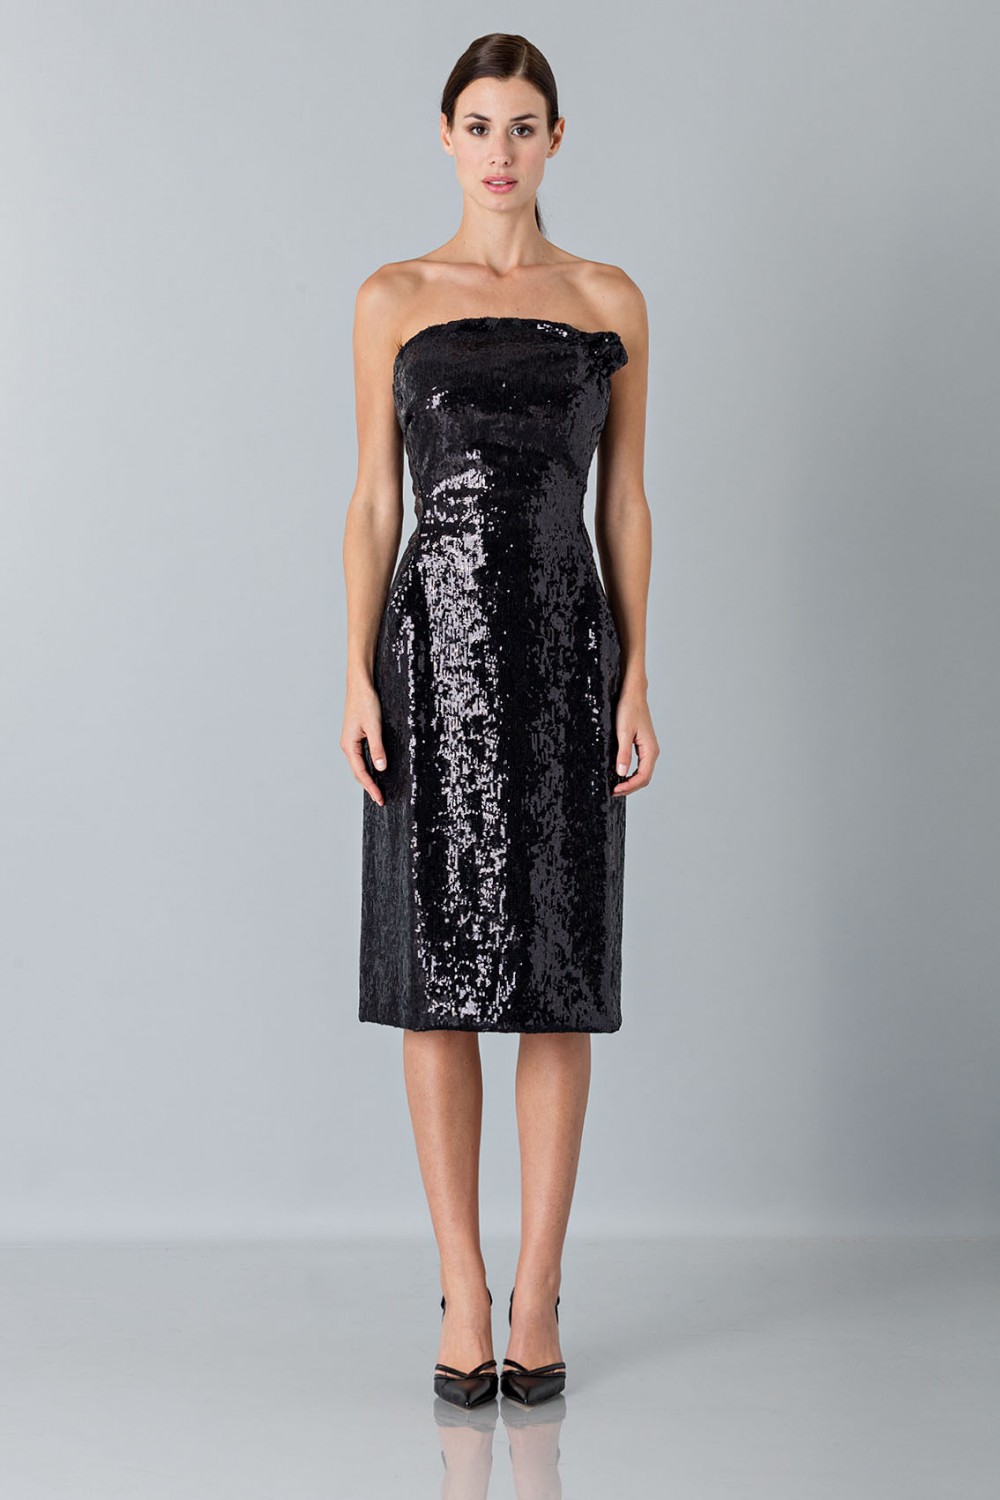 Noleggio Abbigliamento Firmato - Bustier dress - Vivienne Westwood - Drexcode -7